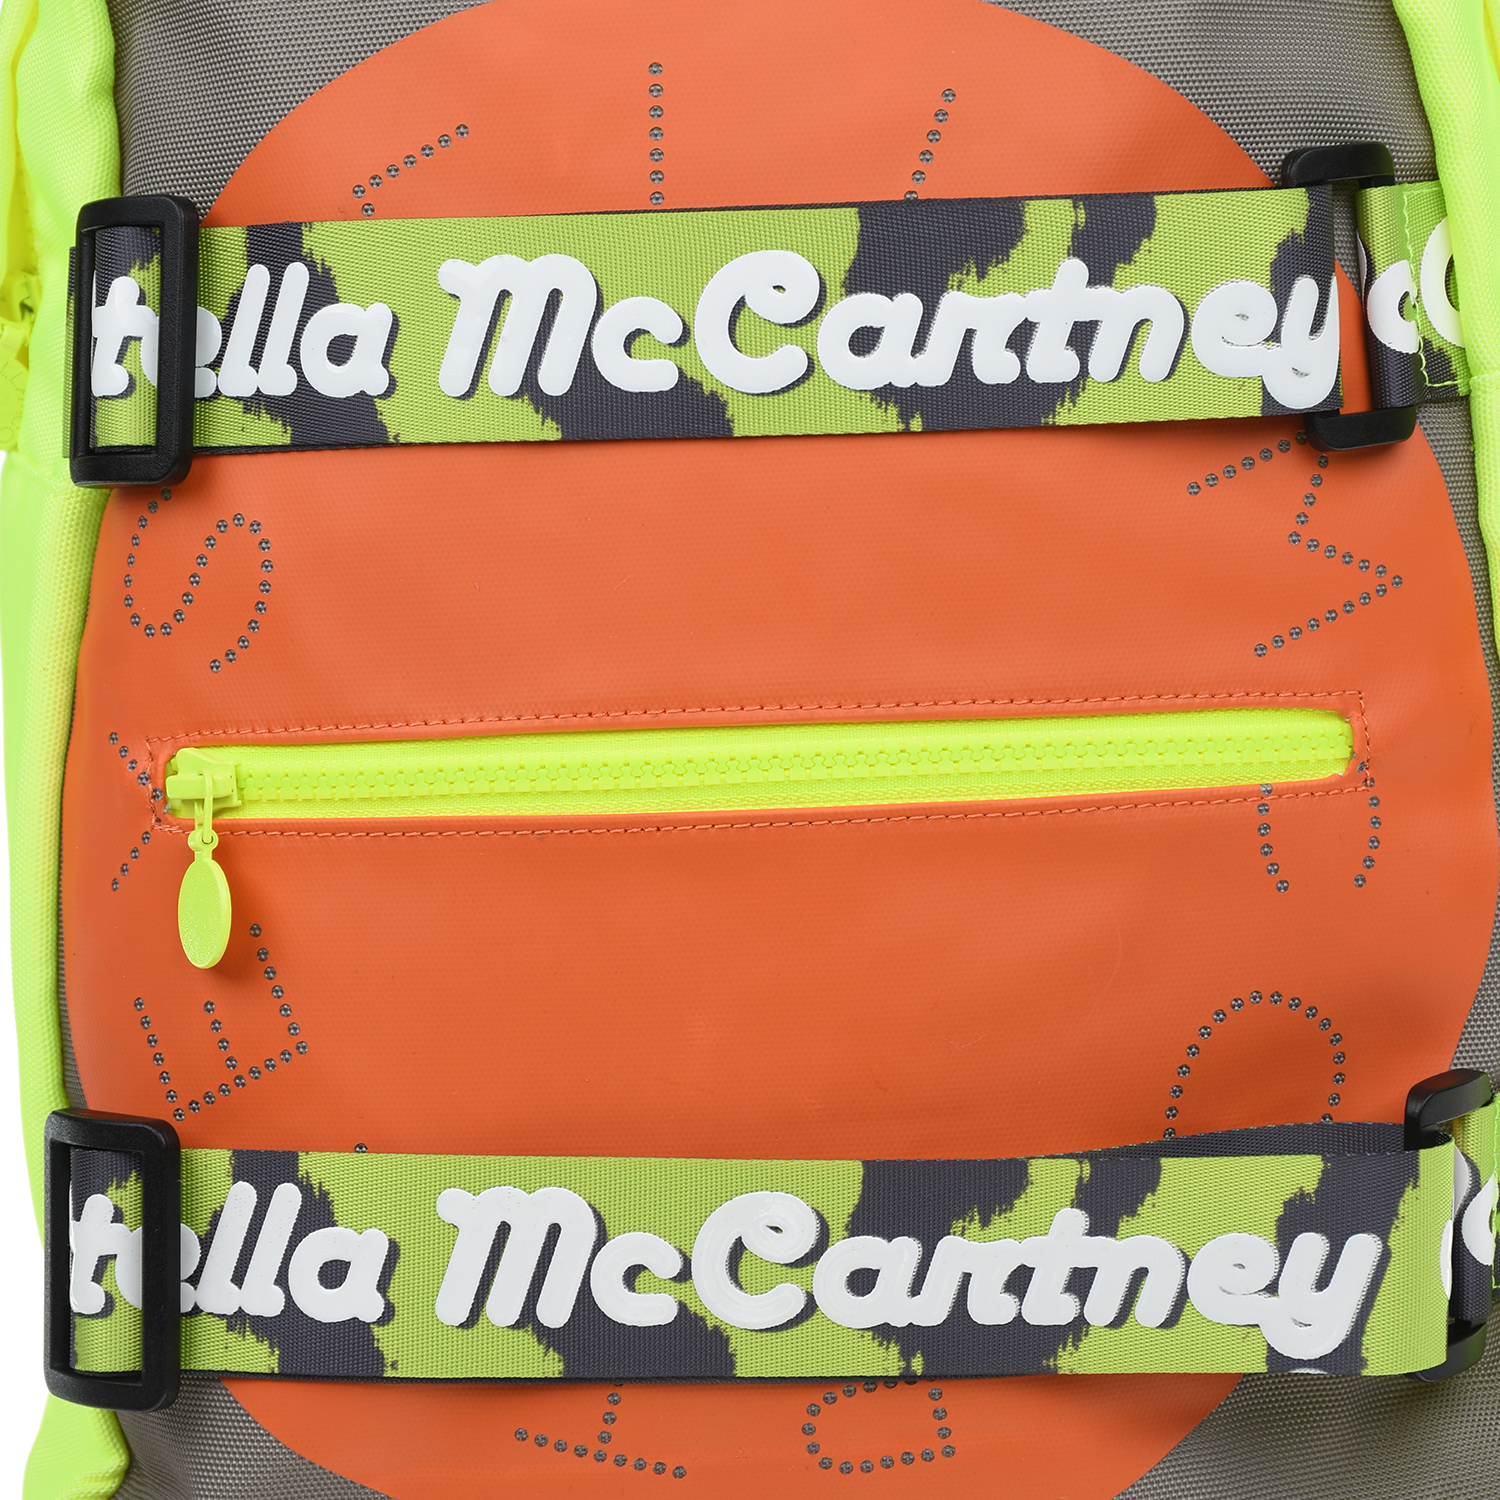 Рюкзак color block 27x9x39 см. Stella McCartney детский, размер unica, цвет мультиколор - фото 5